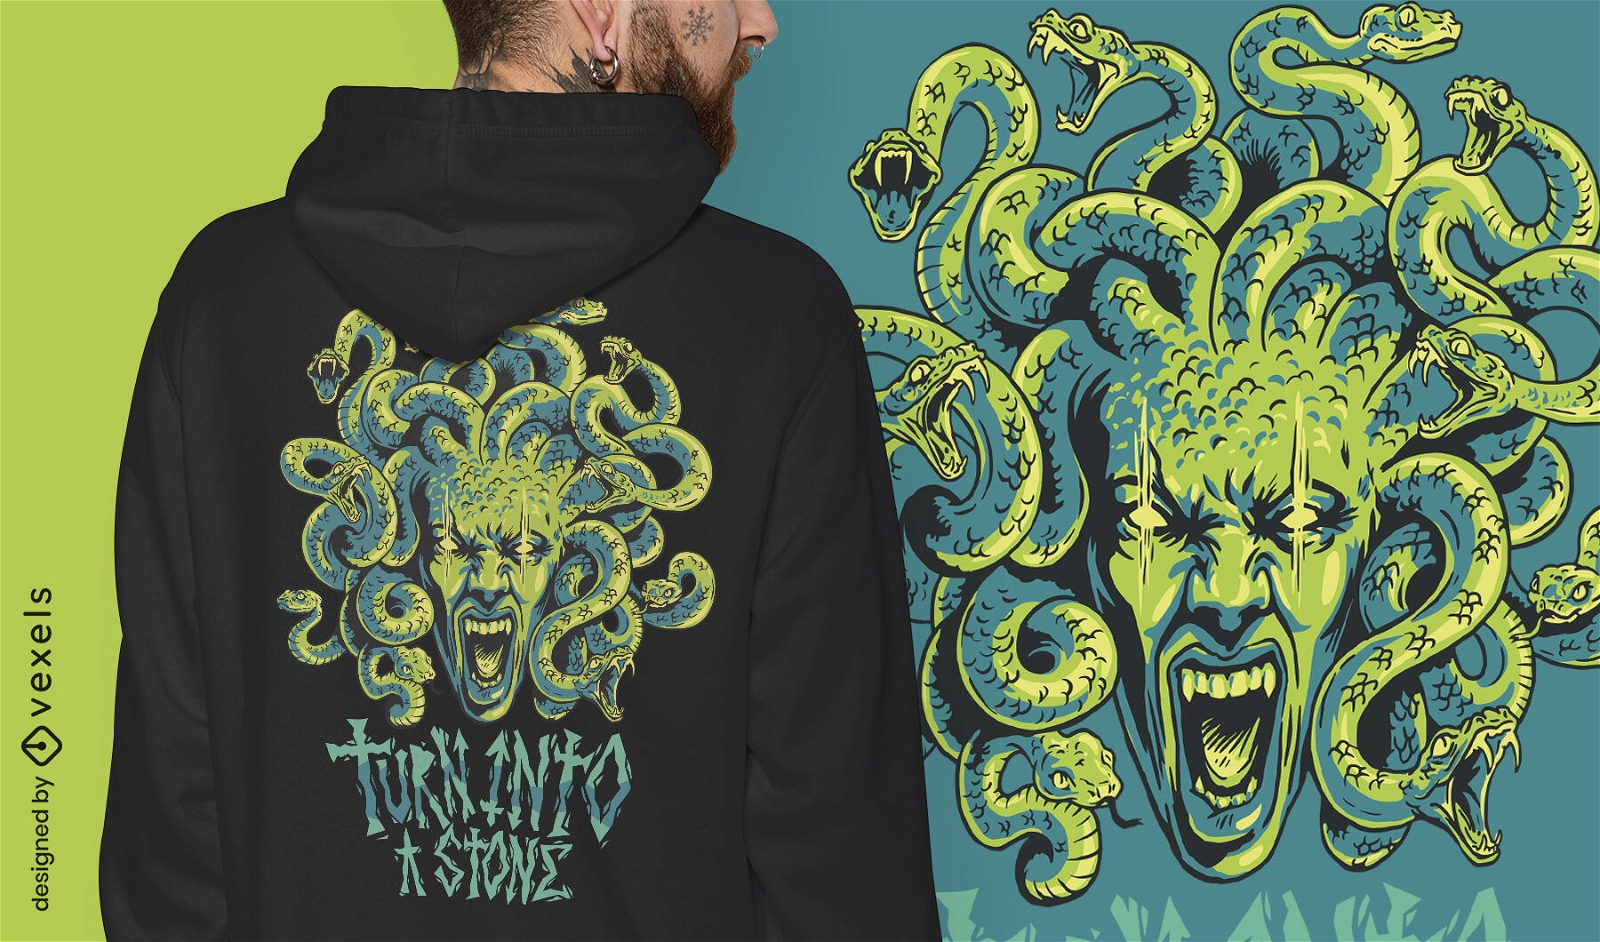 Medusa monster mythical greece t-shirt design